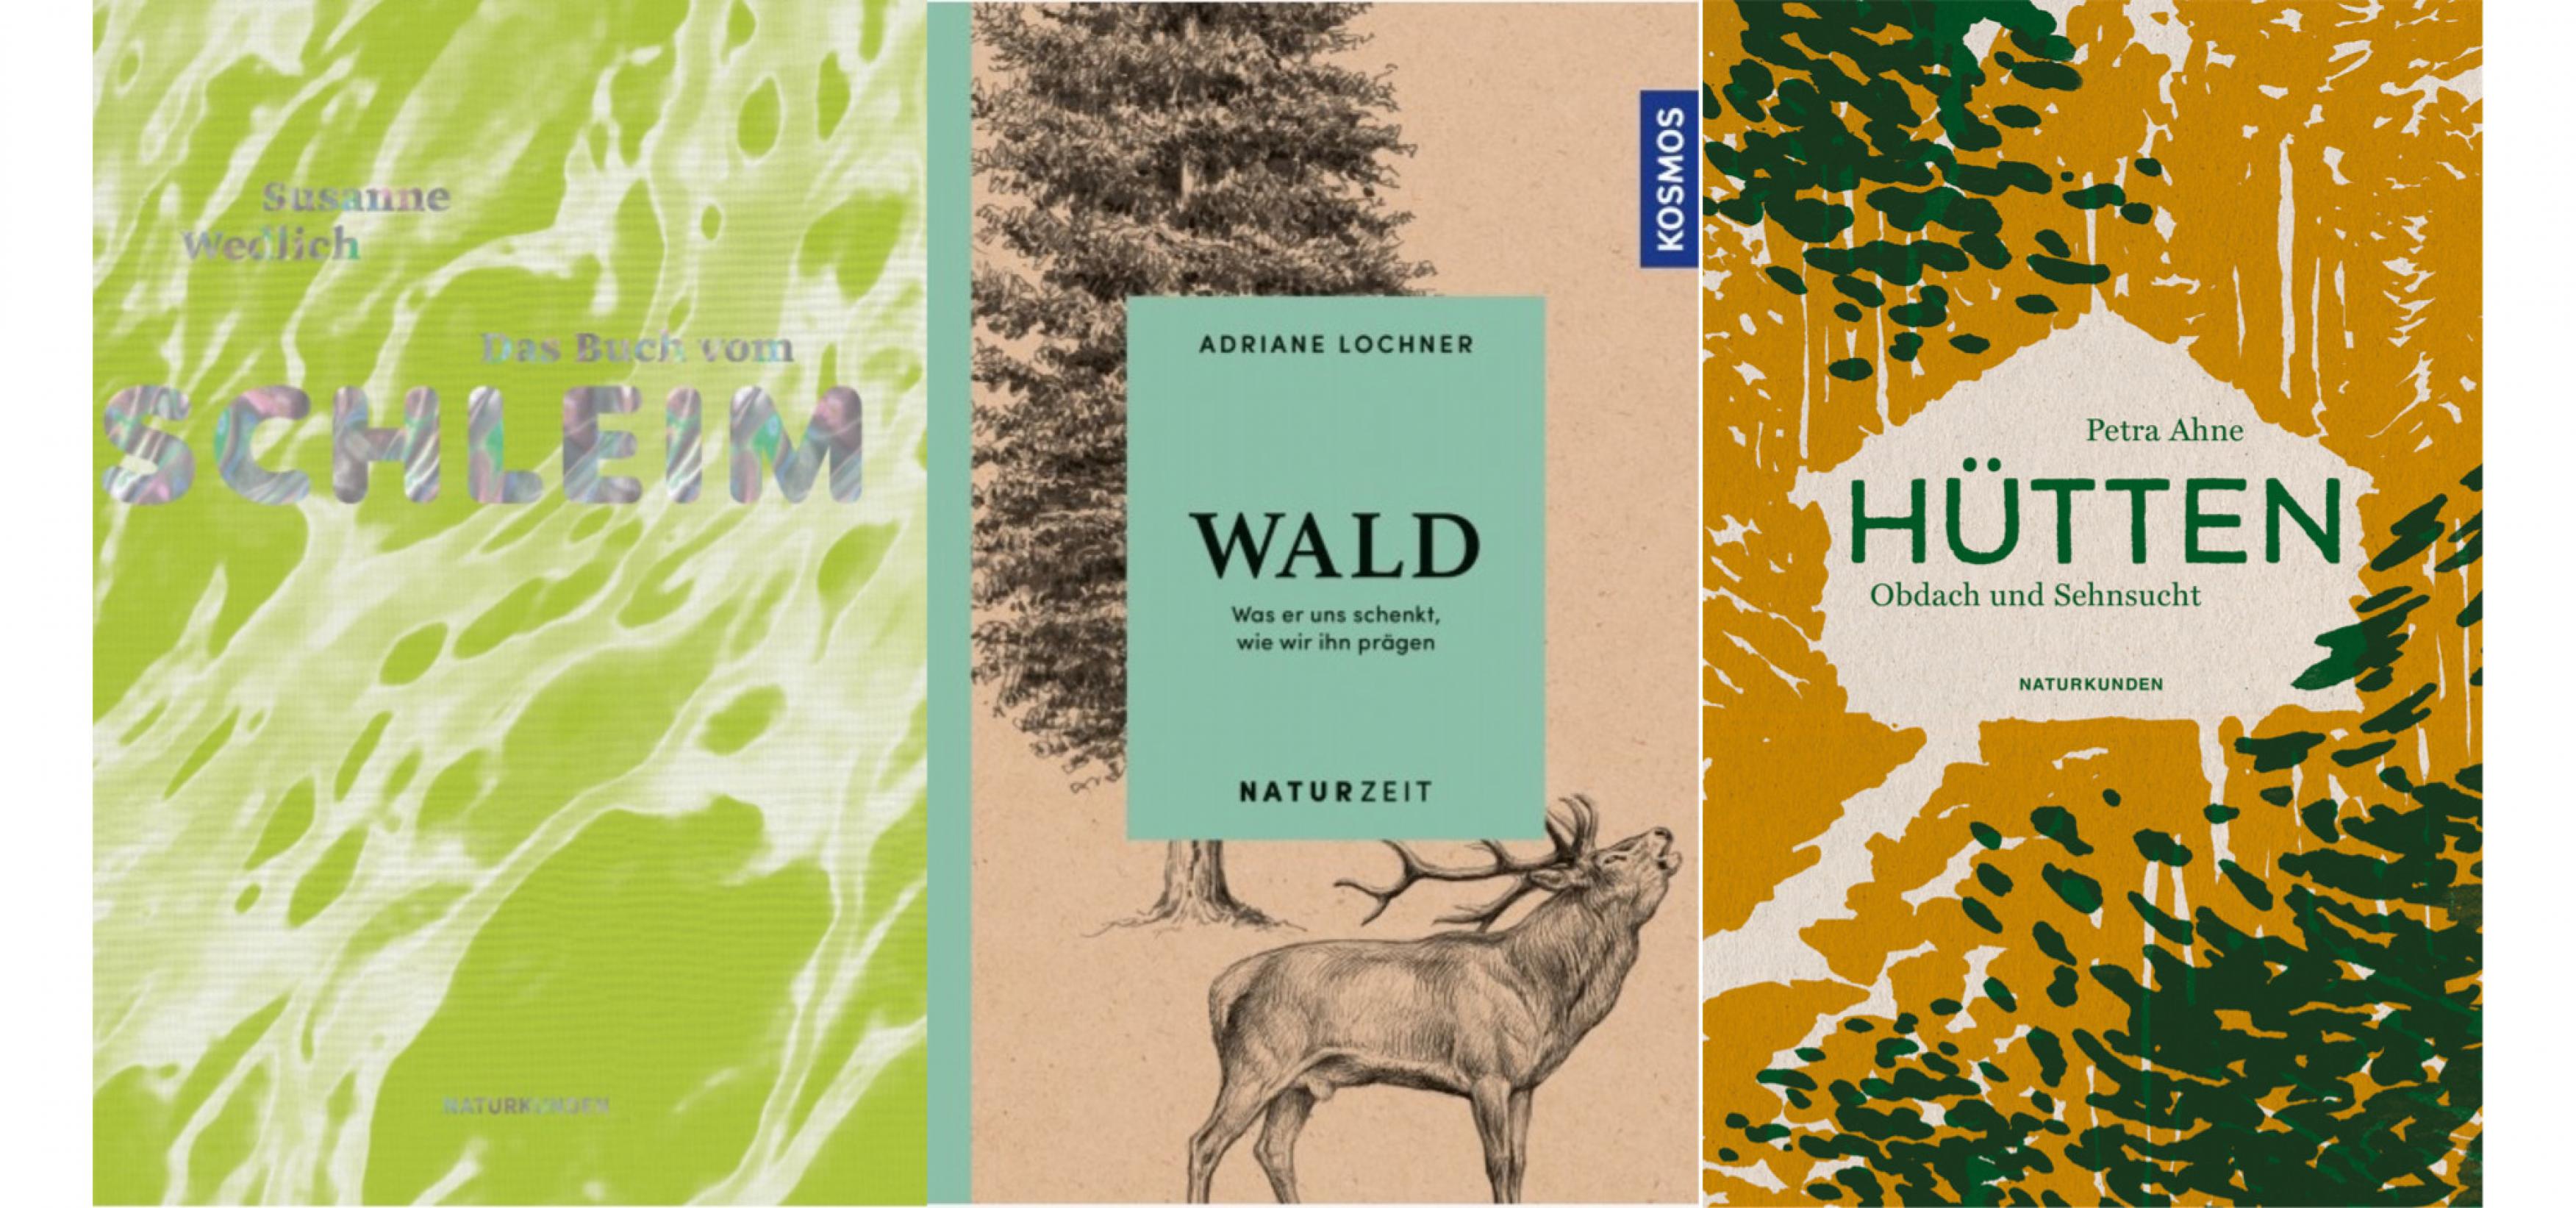 Buchcover von drei Titeln: „Das Buch vom Schleim“, „Wald“ und „Hütten – Obdach und Sehnsucht“